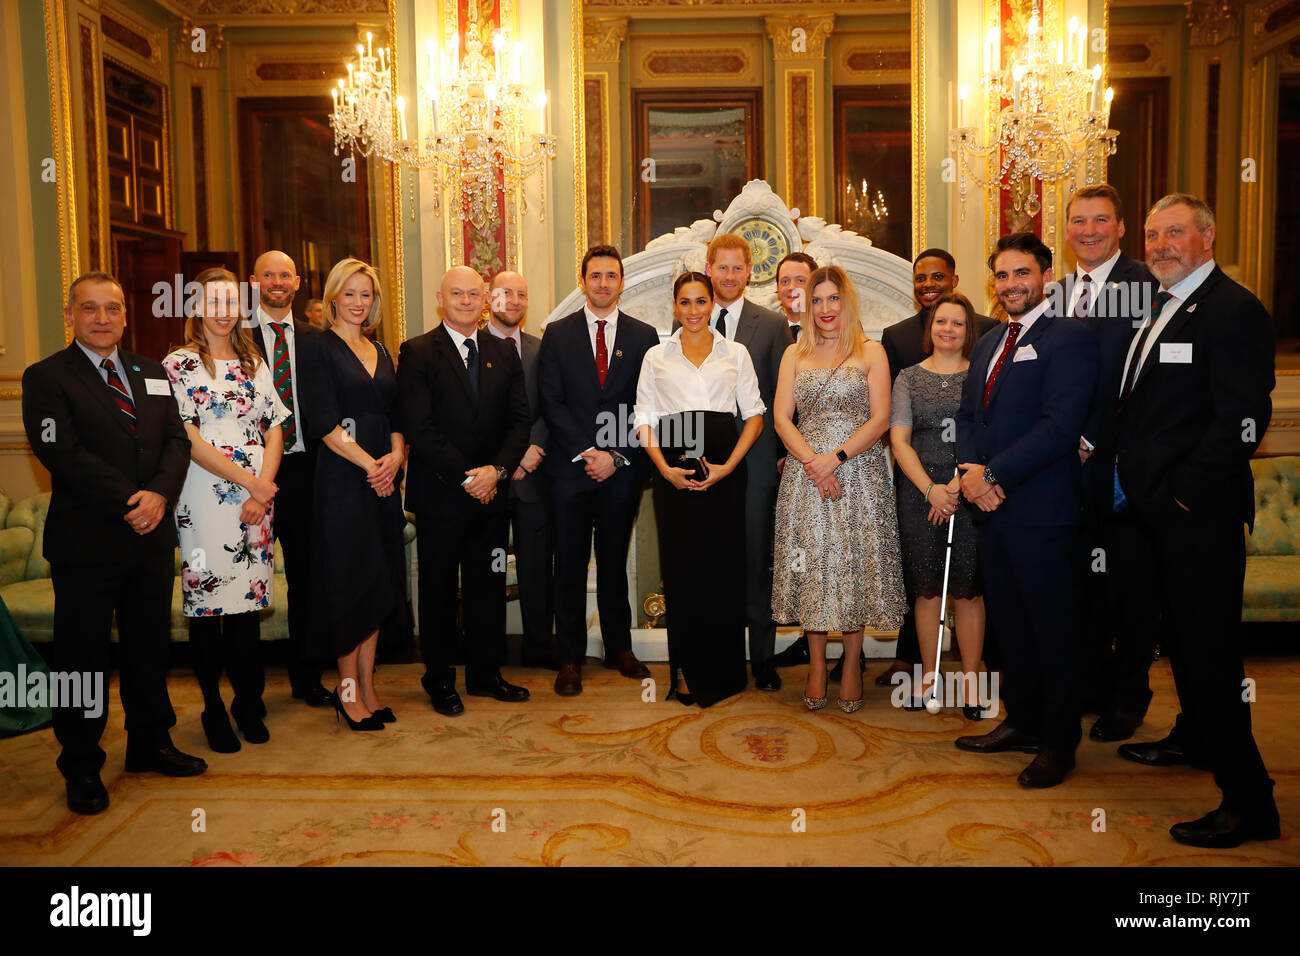 Der Herzog und die Herzogin von Sussex posieren mit den Nominierten und Gäste zu einer Zeremonie an der Rezeption, wie sie die jährlichen Bemühen Fund Awards an der Draper's Hall, London teilnehmen. Stockfoto